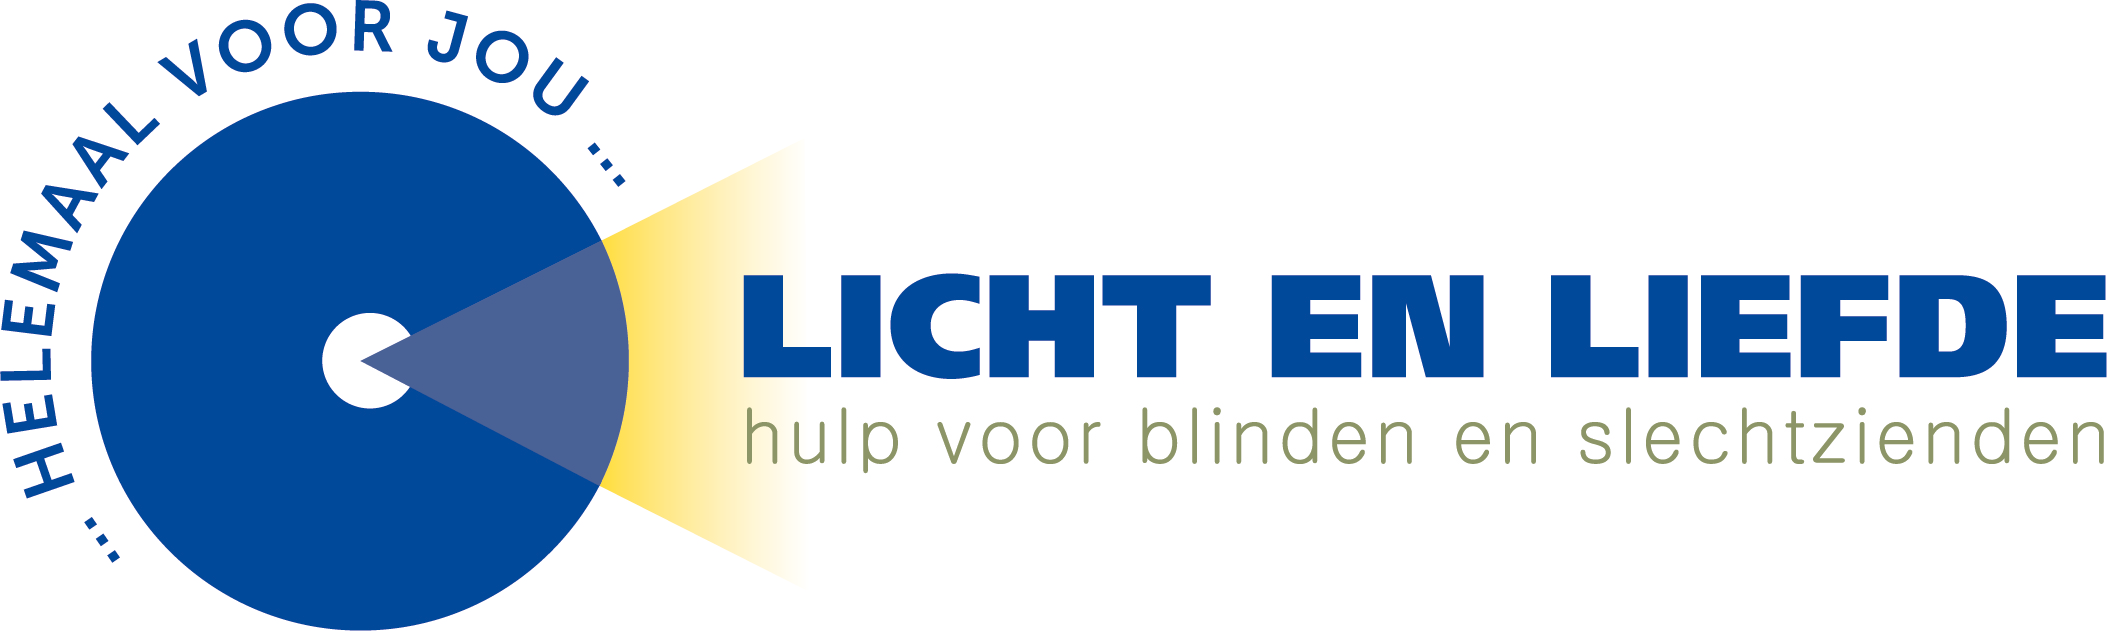 Home Blindenzorg Licht en Liefde, hulp voor blinden en slechtzienden